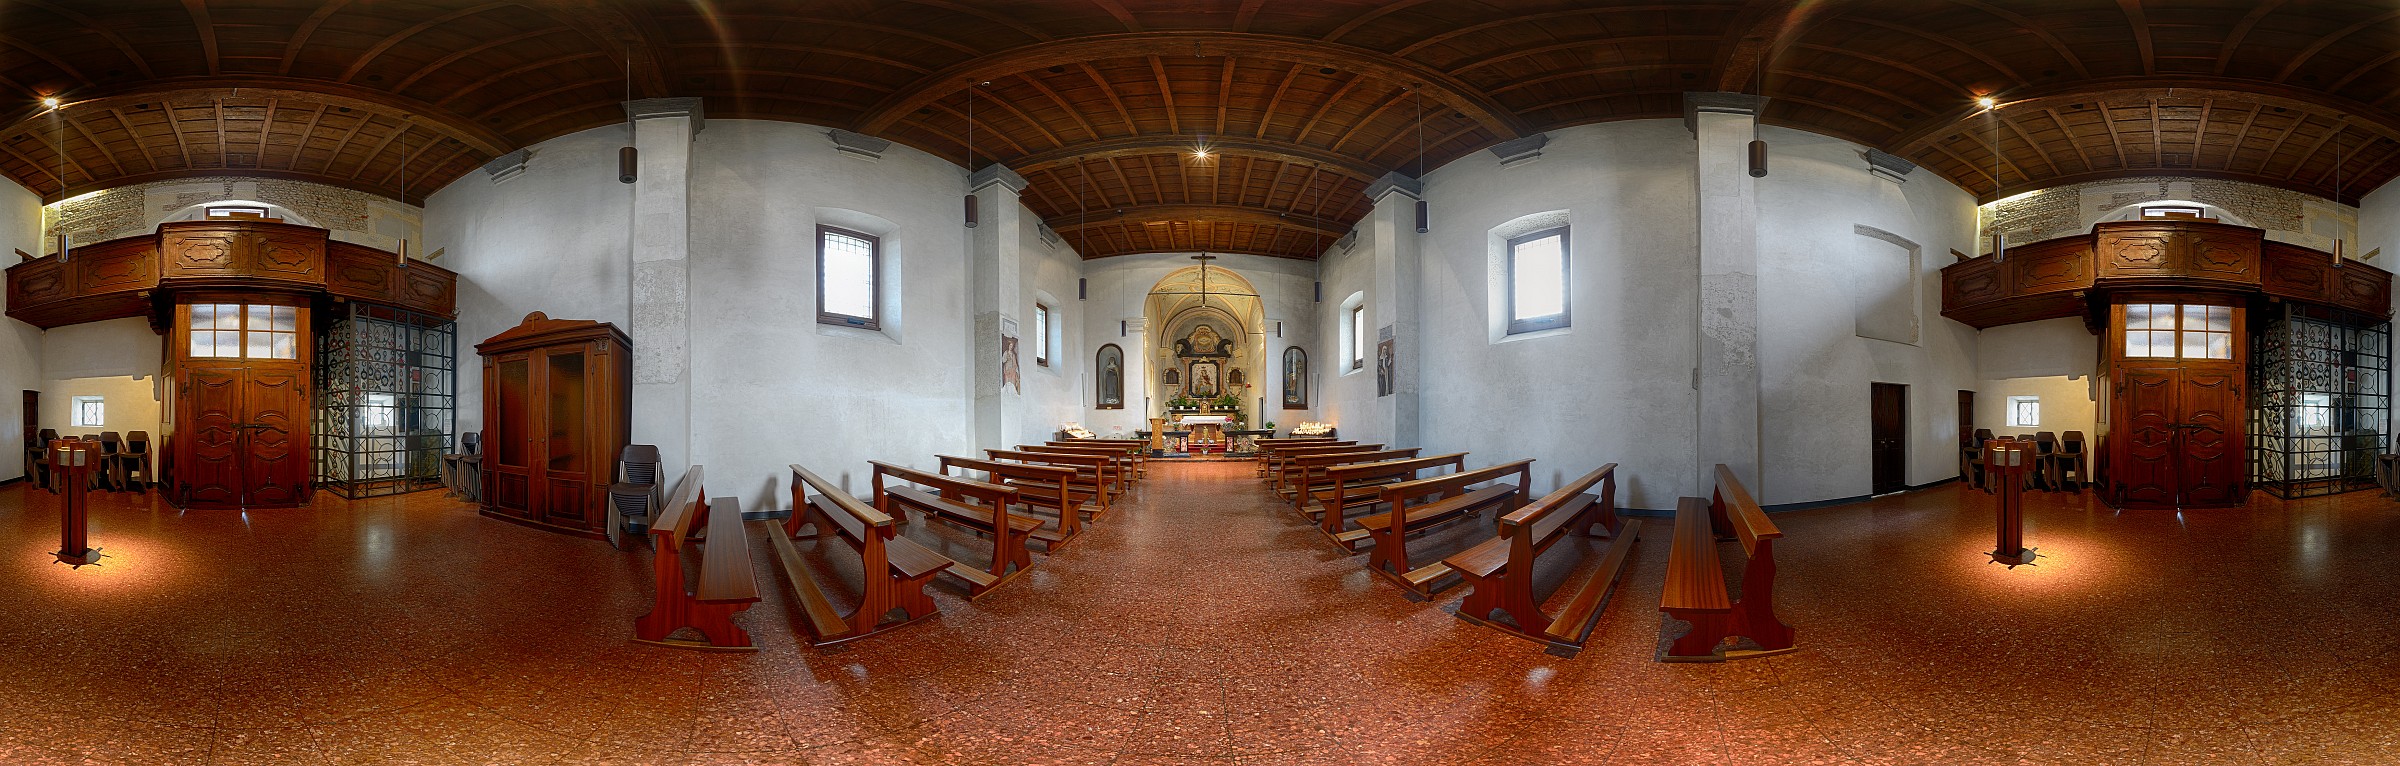 Truccazzano - Santuario di Rezzano - interno...